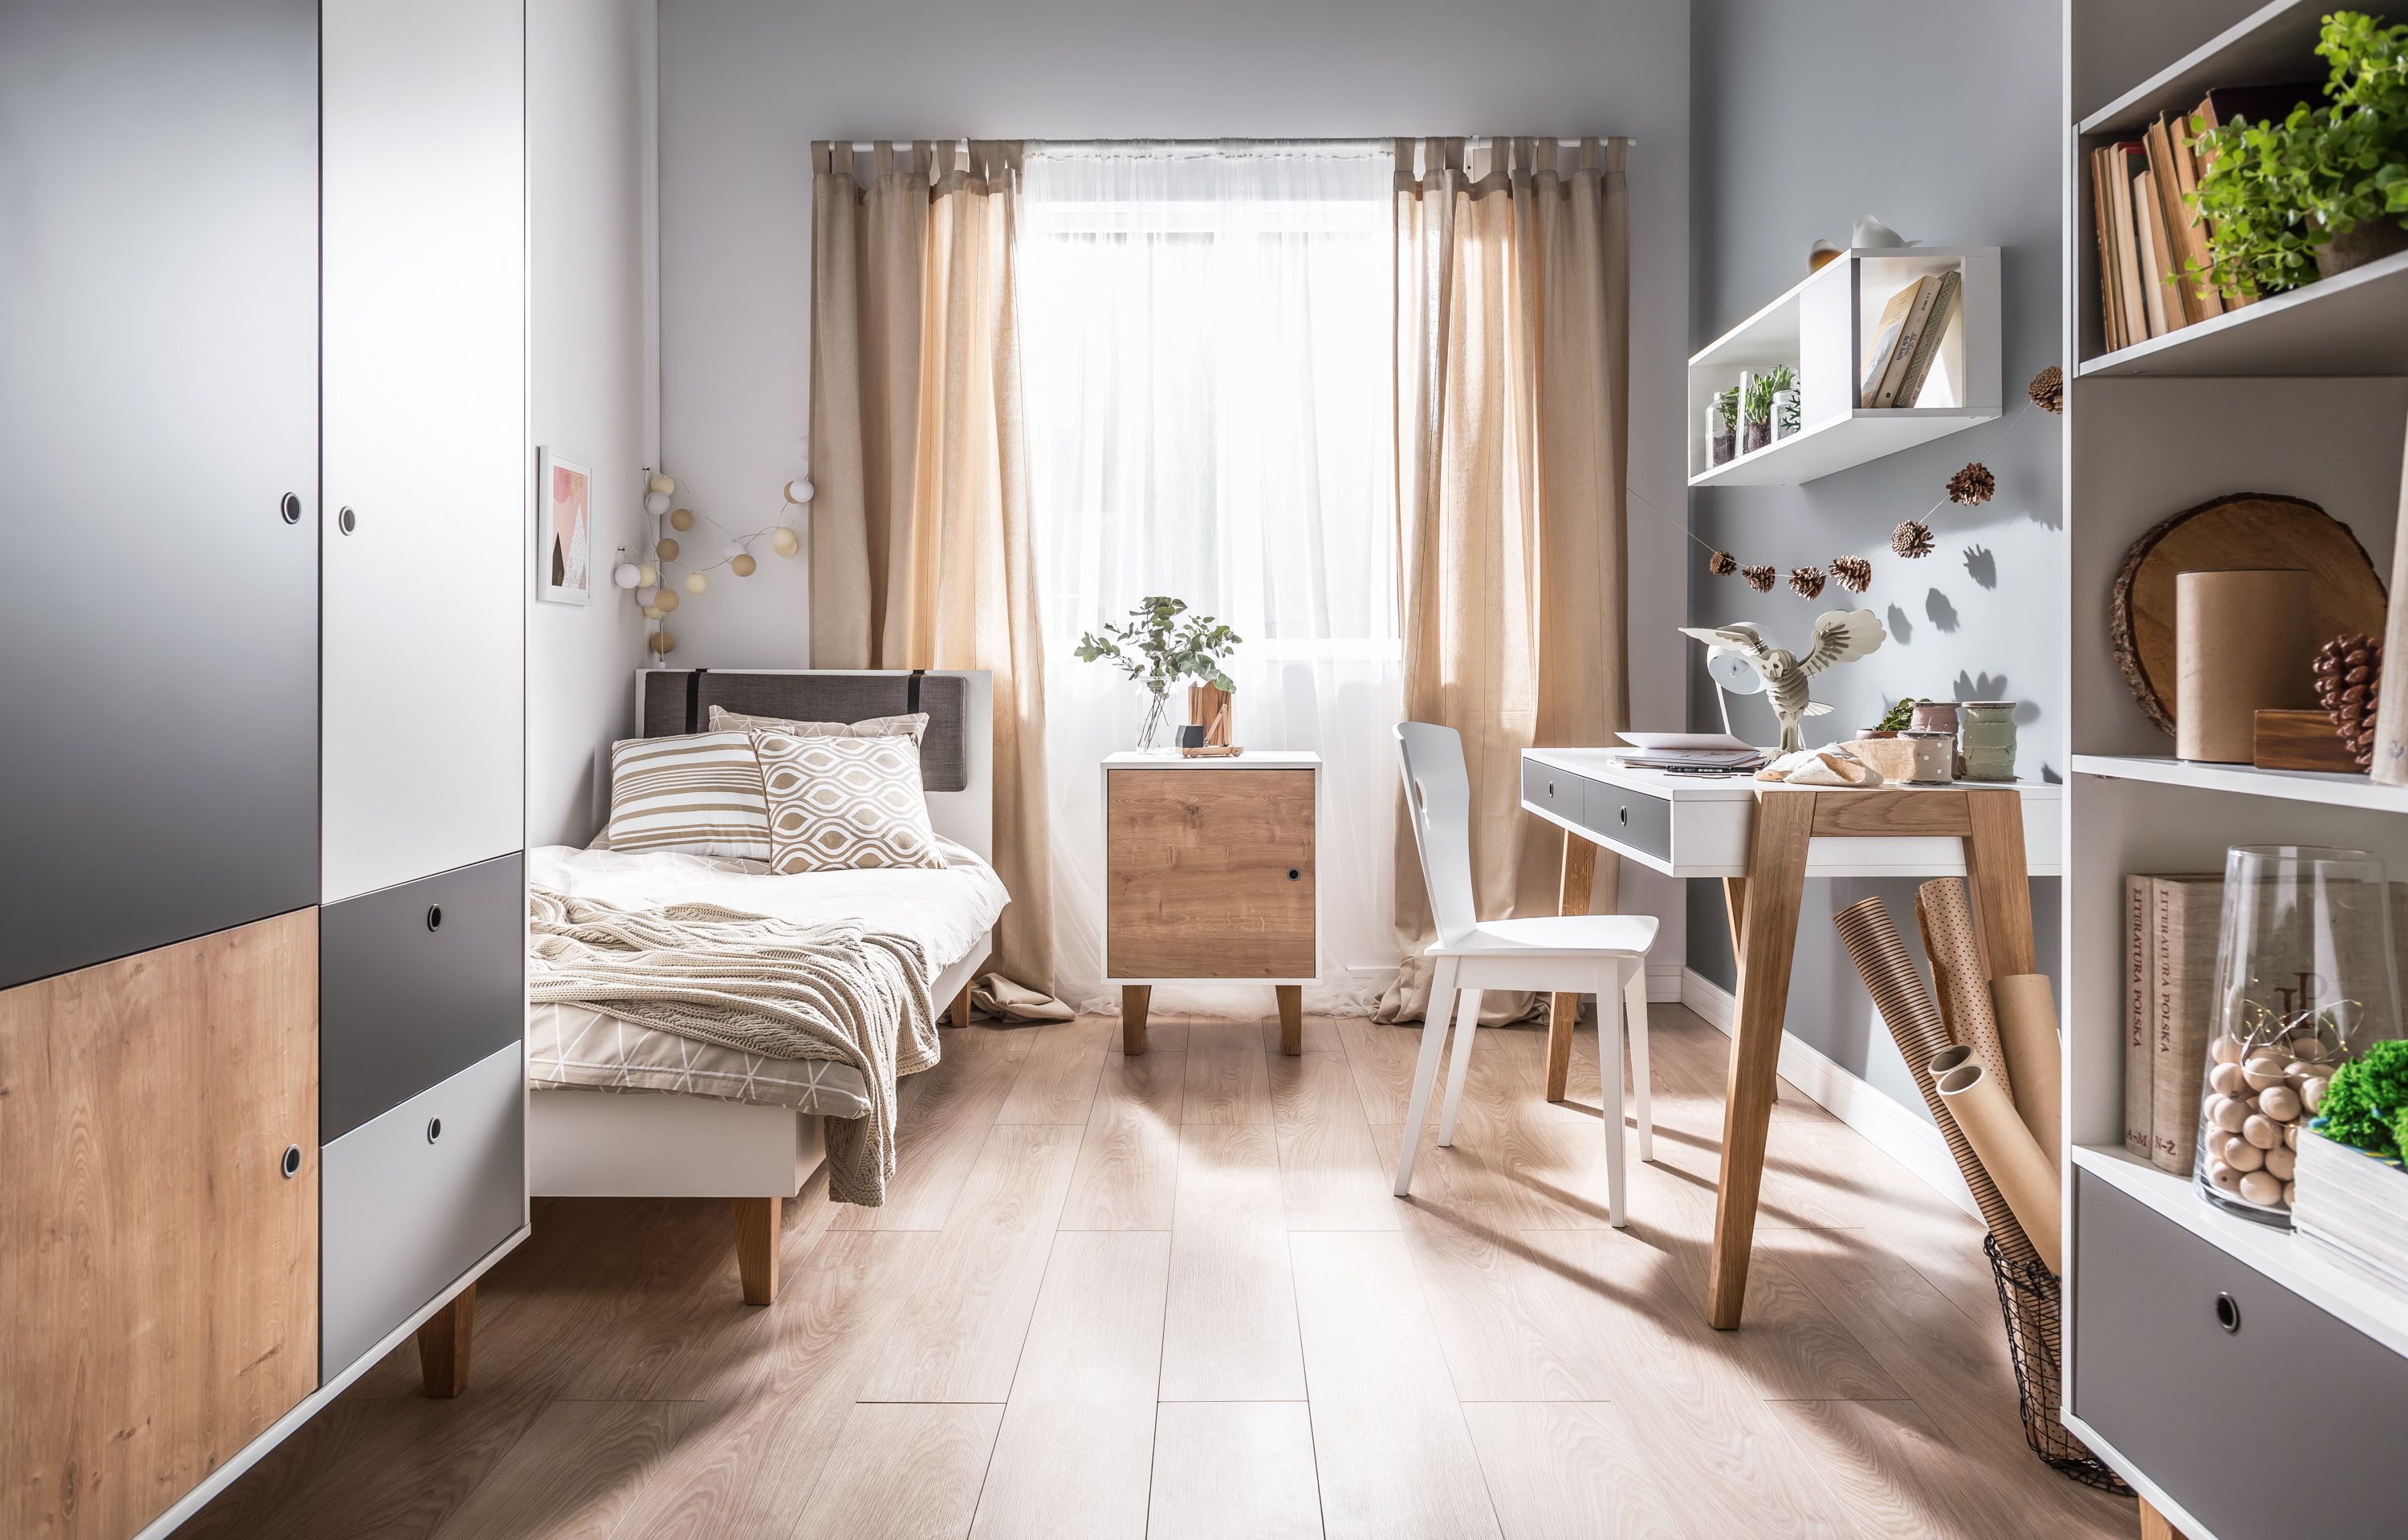 Una piccola camera da letto in appartamento - una limitazione o una rapida opportunità di design?